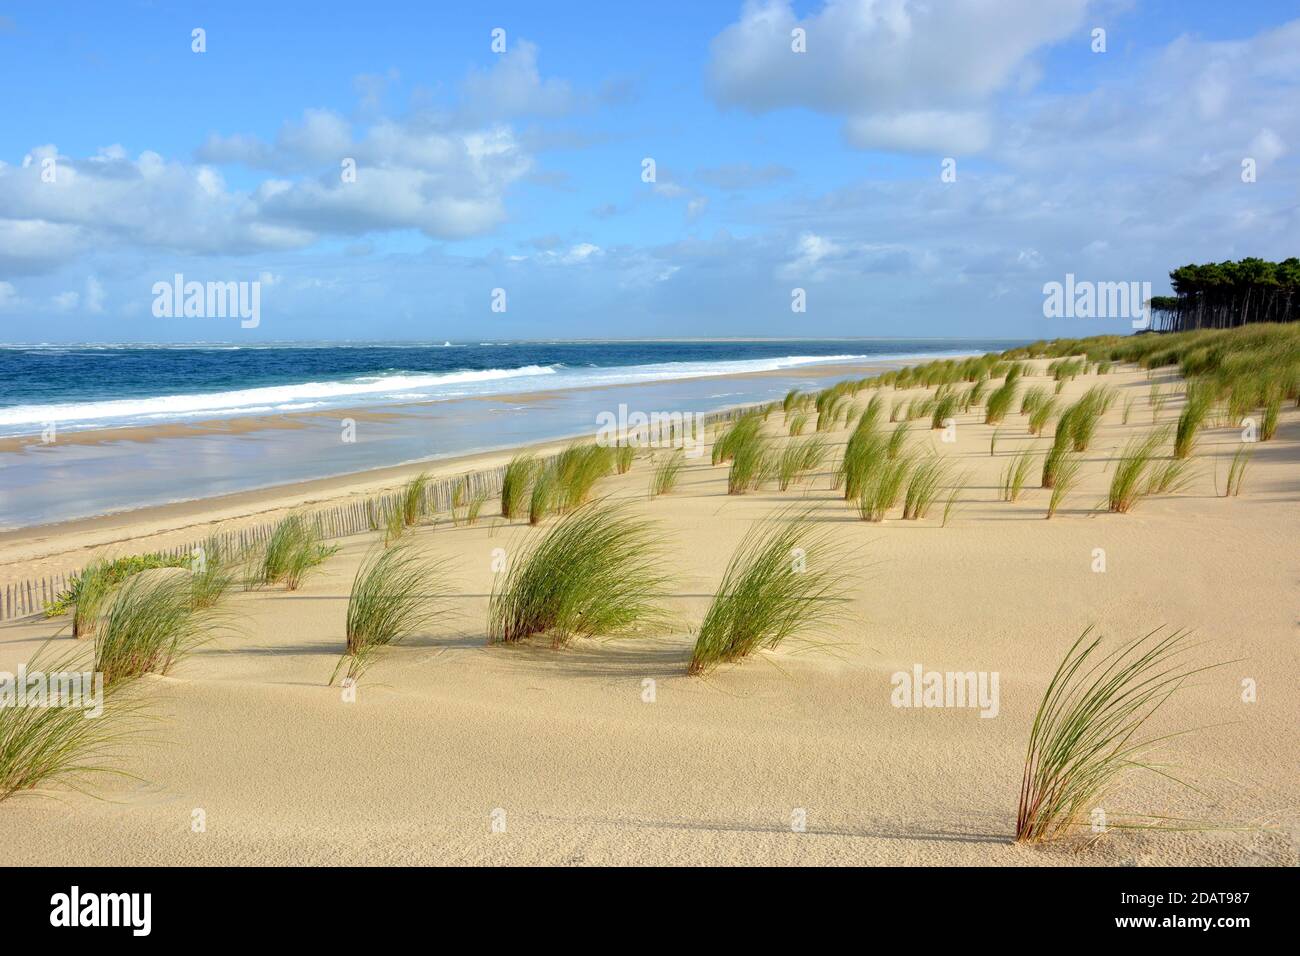 Frankreich, aquitanien, die atlantikküste bildeten einen immensen Sandstrand mit Dünen und Wellen gesäumt Surfen, hier die Lagune Strand . Stockfoto